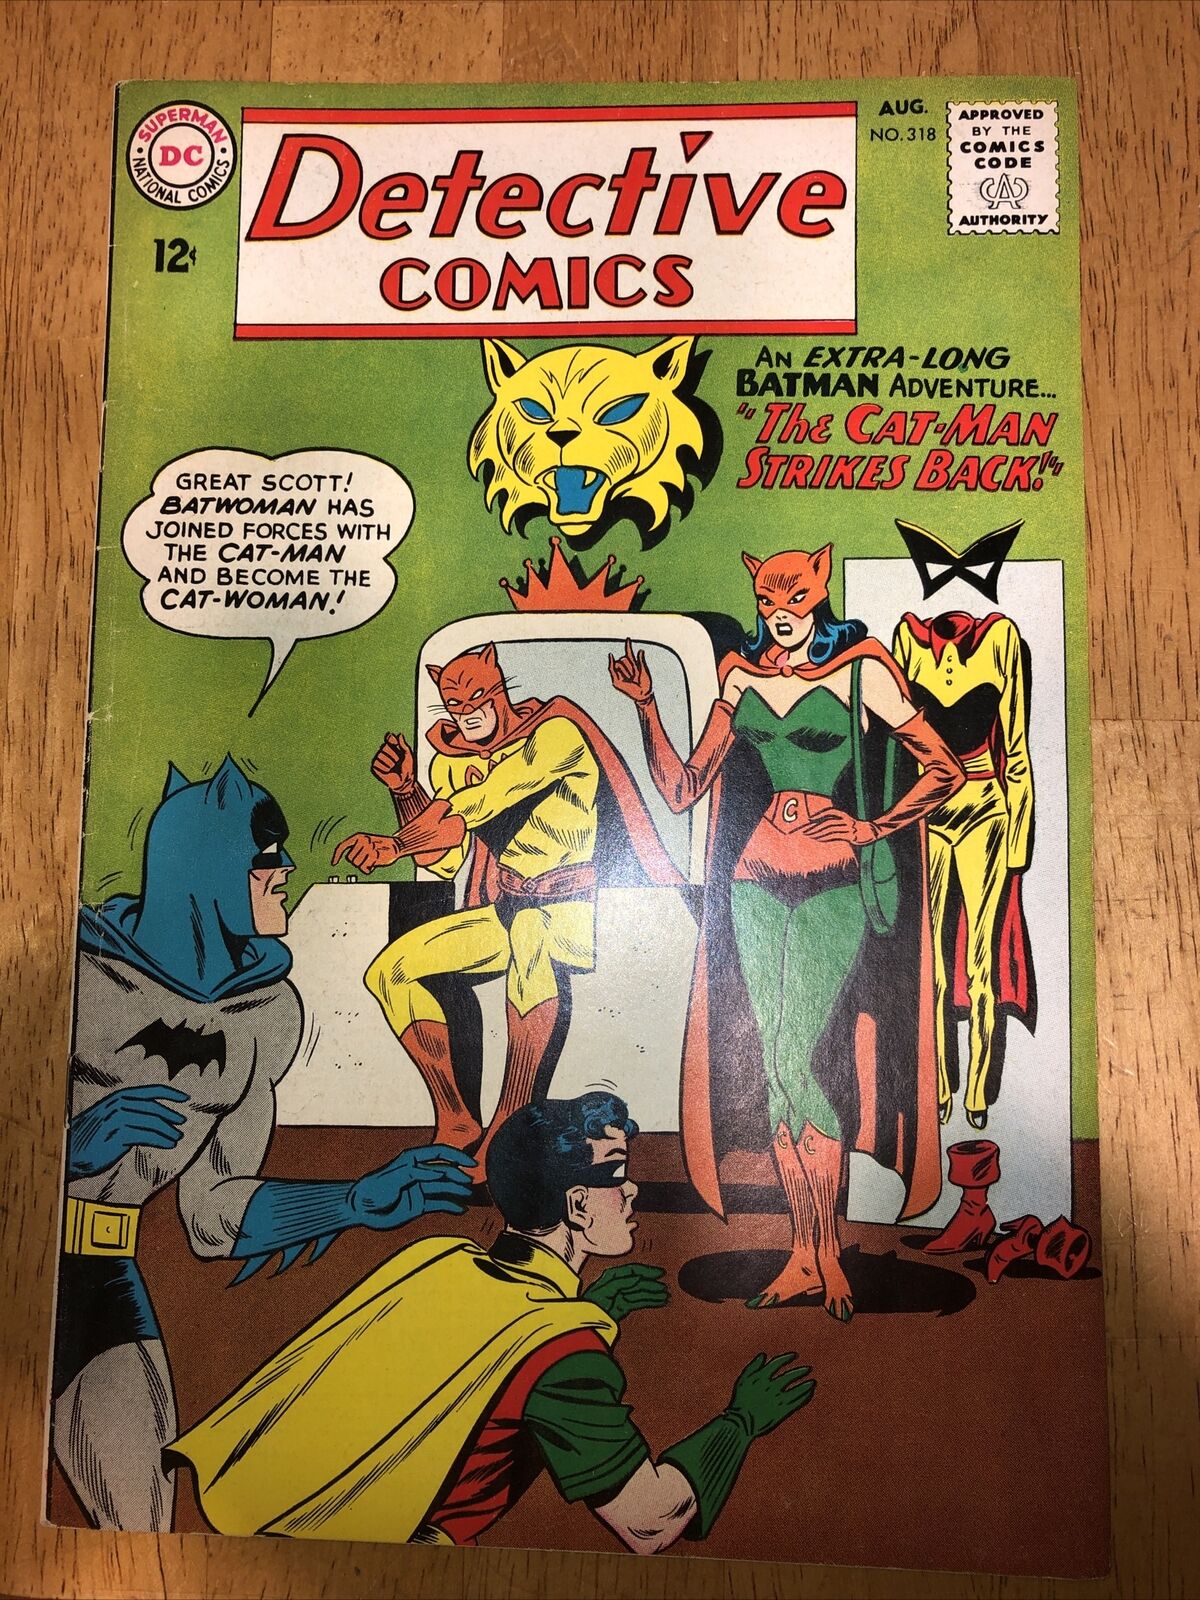 DETECTIVE COMICS #318 BATMAN, CATMAN, CATWOMAN, BATWOMAN - 1963